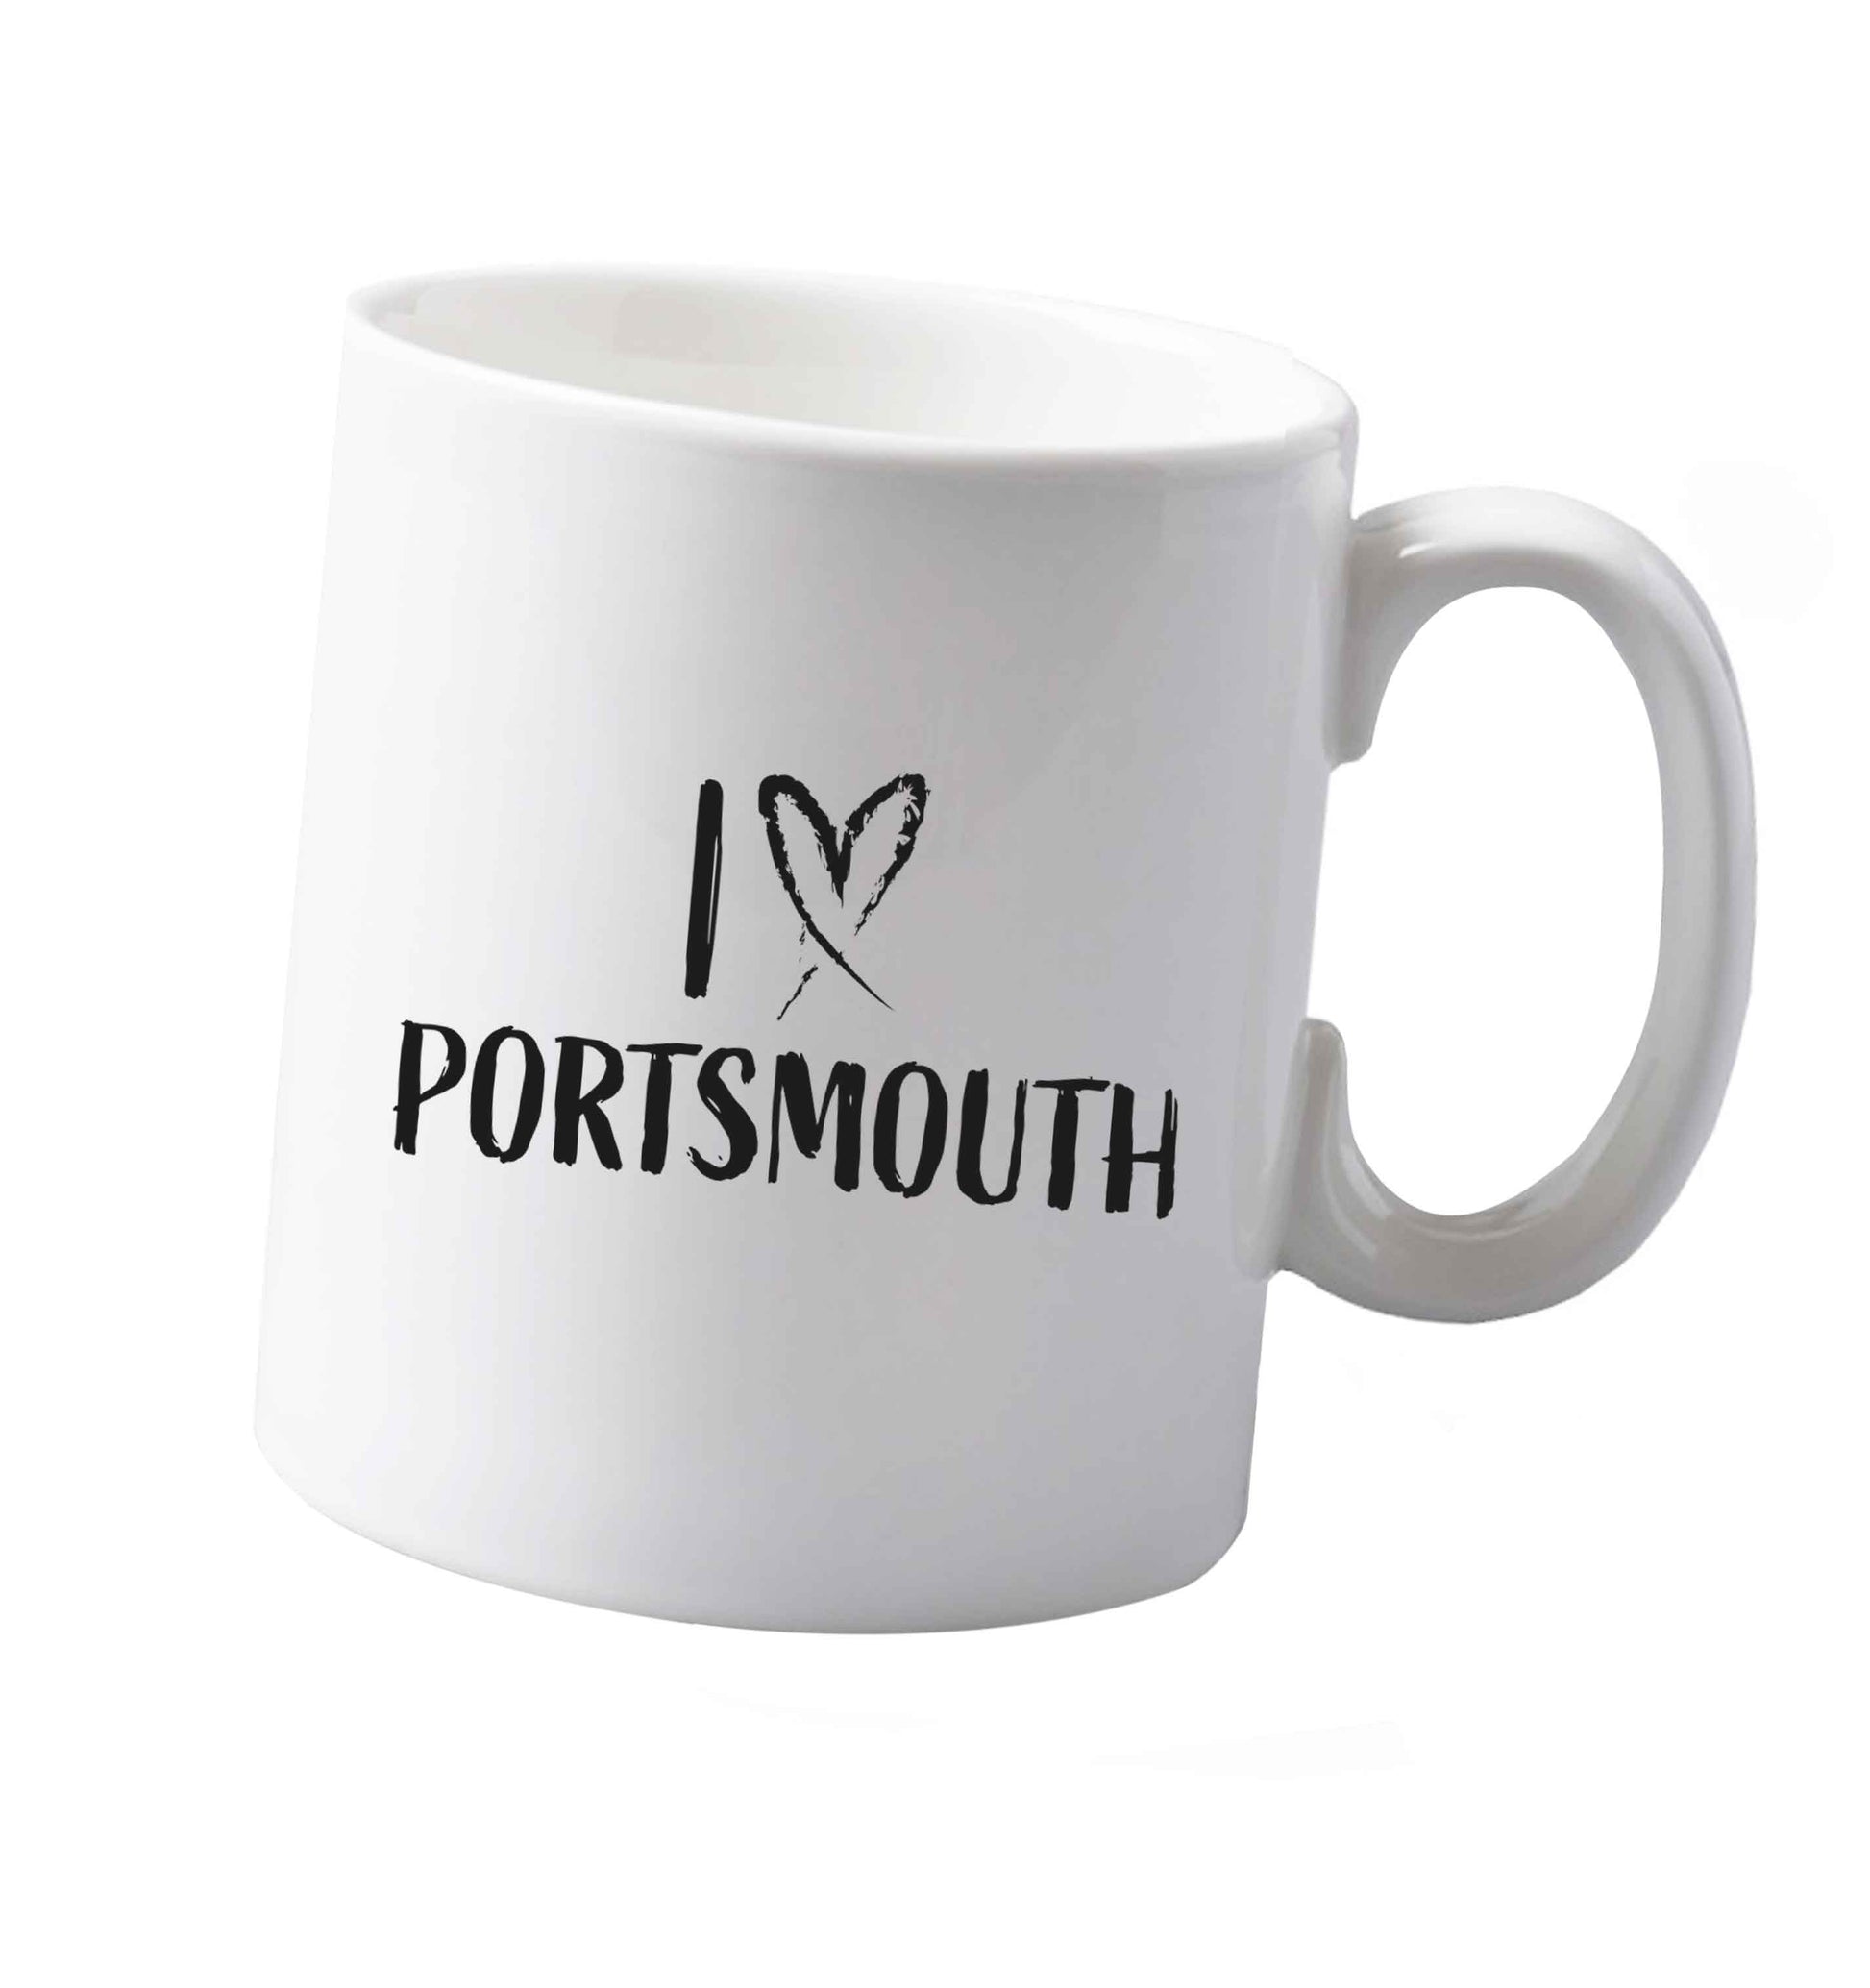 10 oz I love Portsmouth ceramic mug both sides